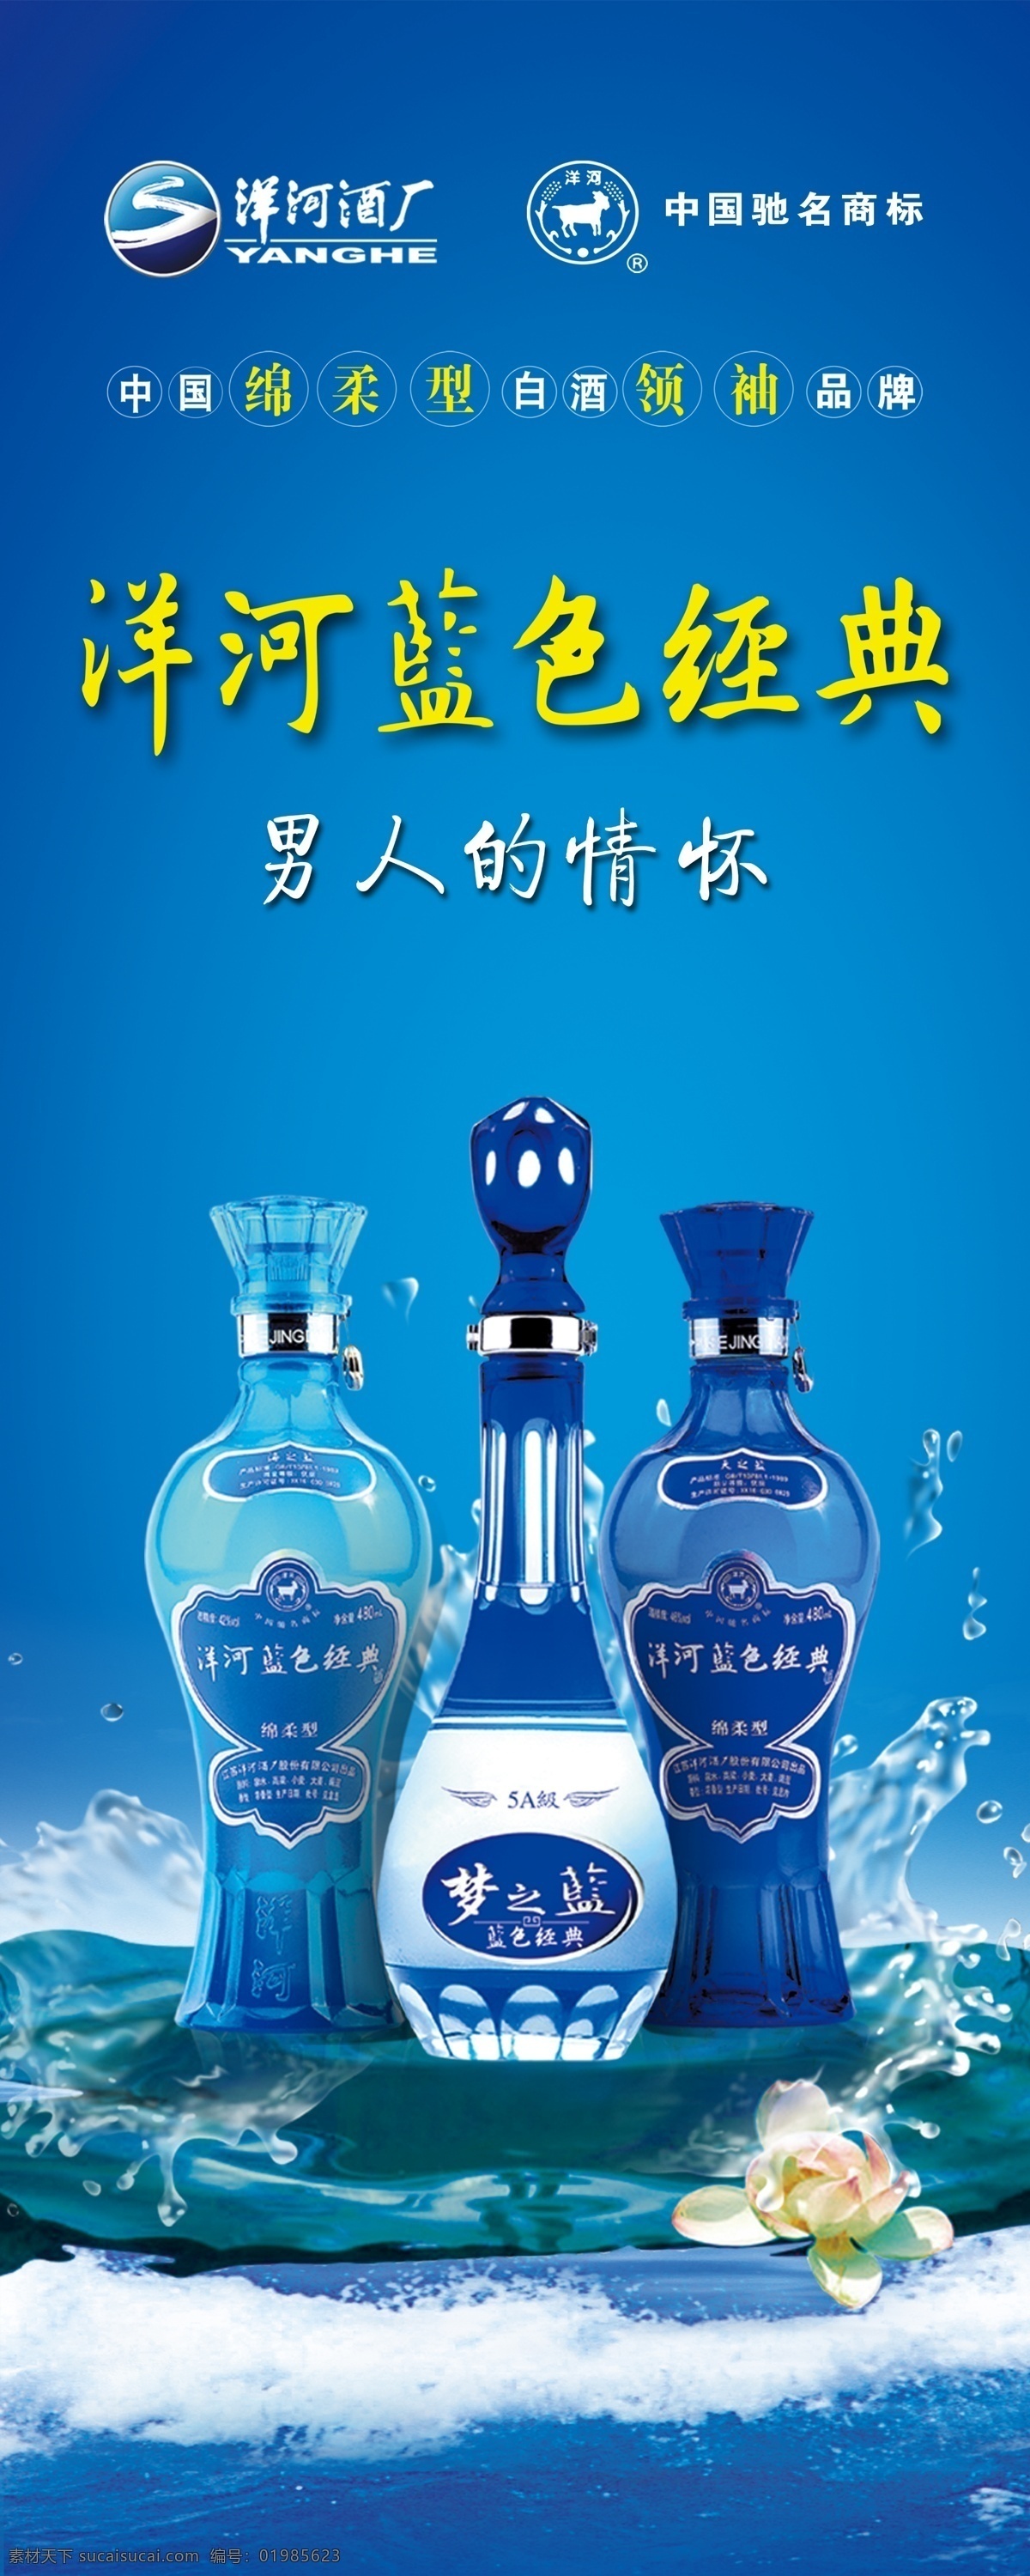 洋河蓝色经典 男人的情怀 天之蓝 海之蓝 梦之蓝 酒瓶 海水 波浪 水珠 荷花 广告素材 广告宣传 源文件 广告设计模板